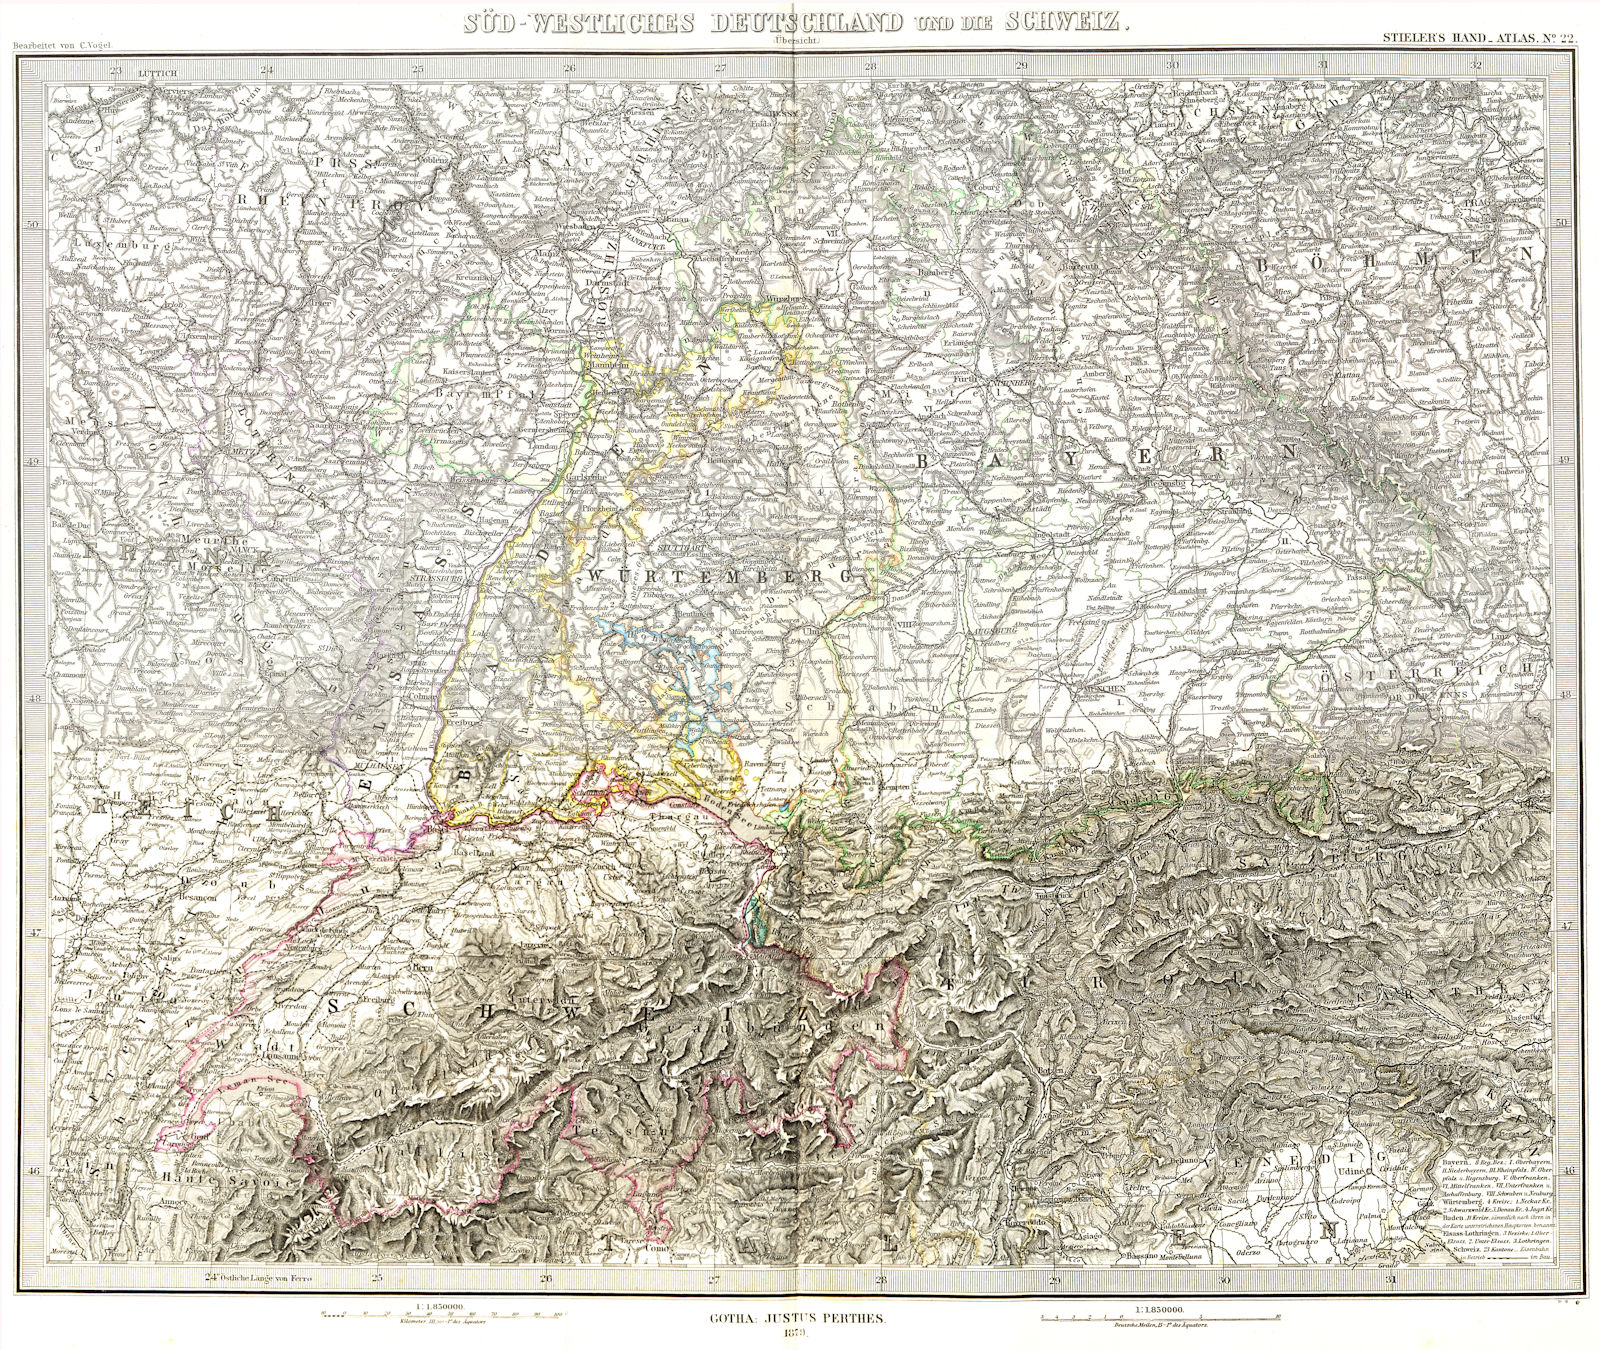 Associate Product GERMANY. Sud-Westliches Deutschland Schweiz 1879 old antique map plan chart